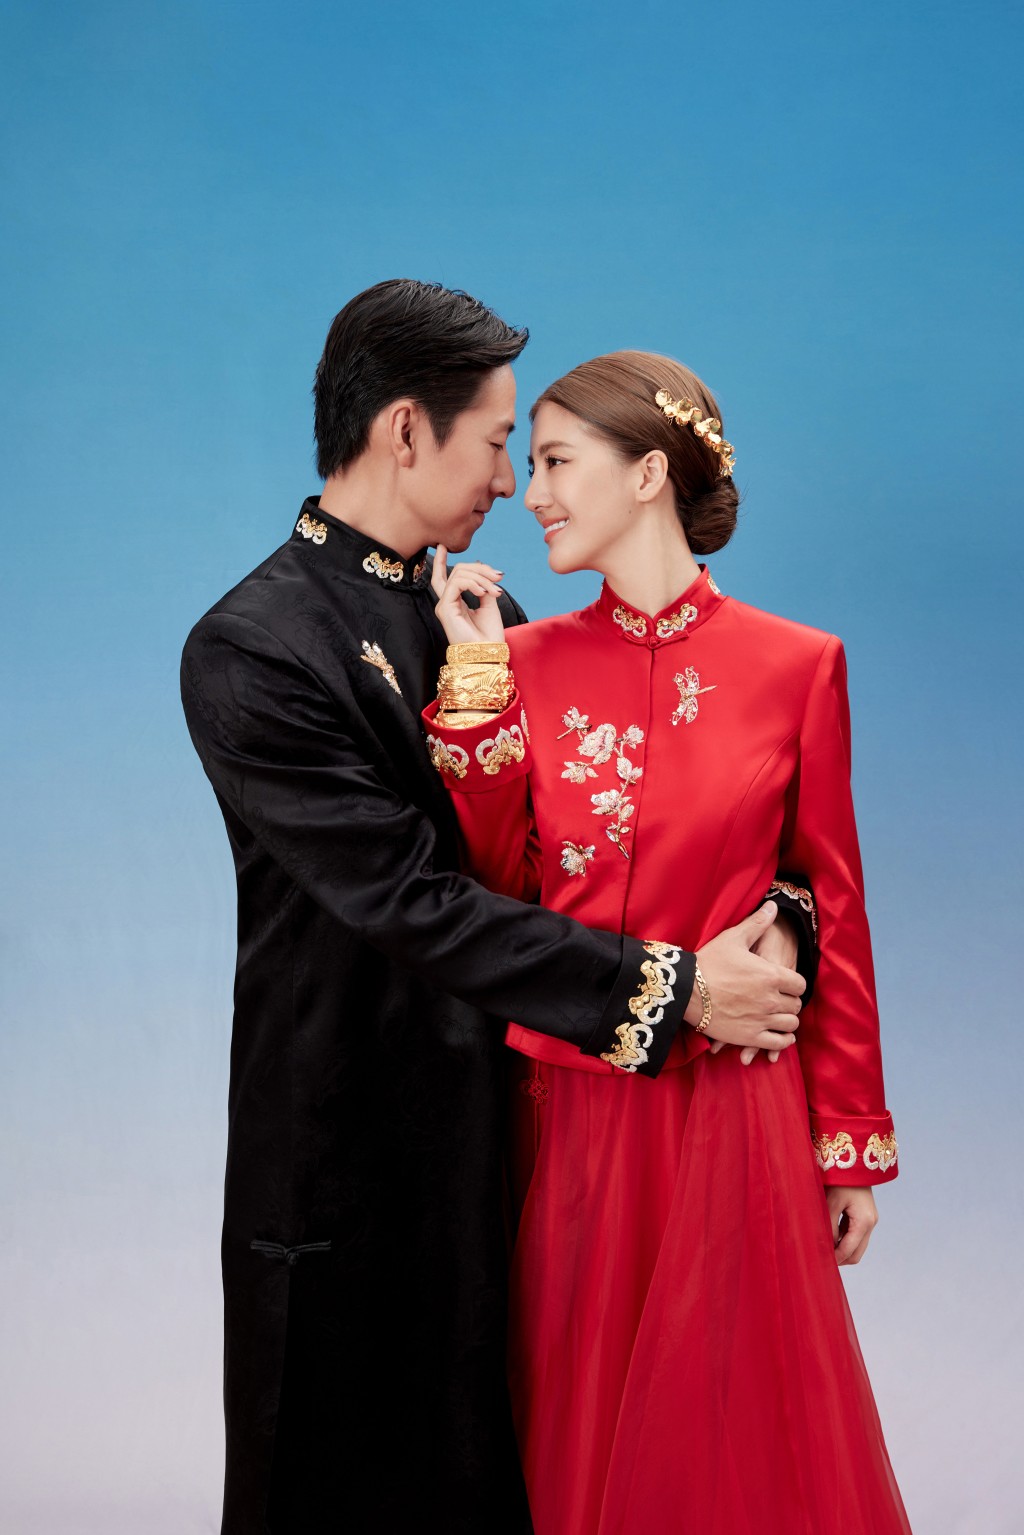 吴千语与施伯雄之后终于宣布在12月16日于双方亲友见证下完成证婚仪式。